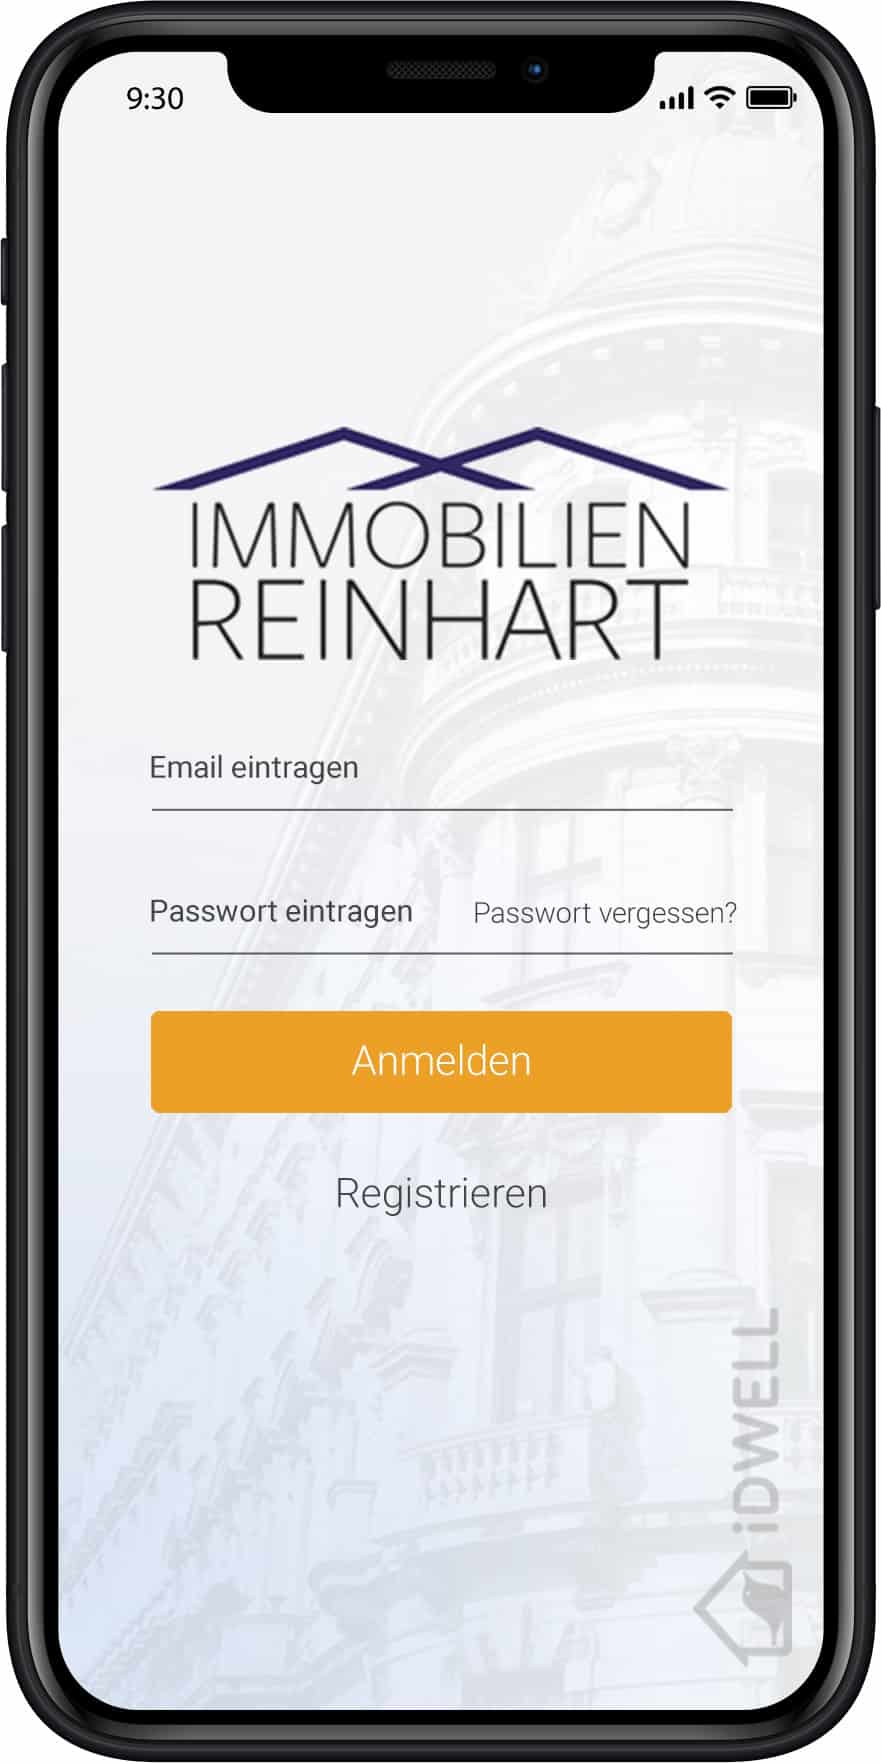 Immobilien Reinhart App - Login